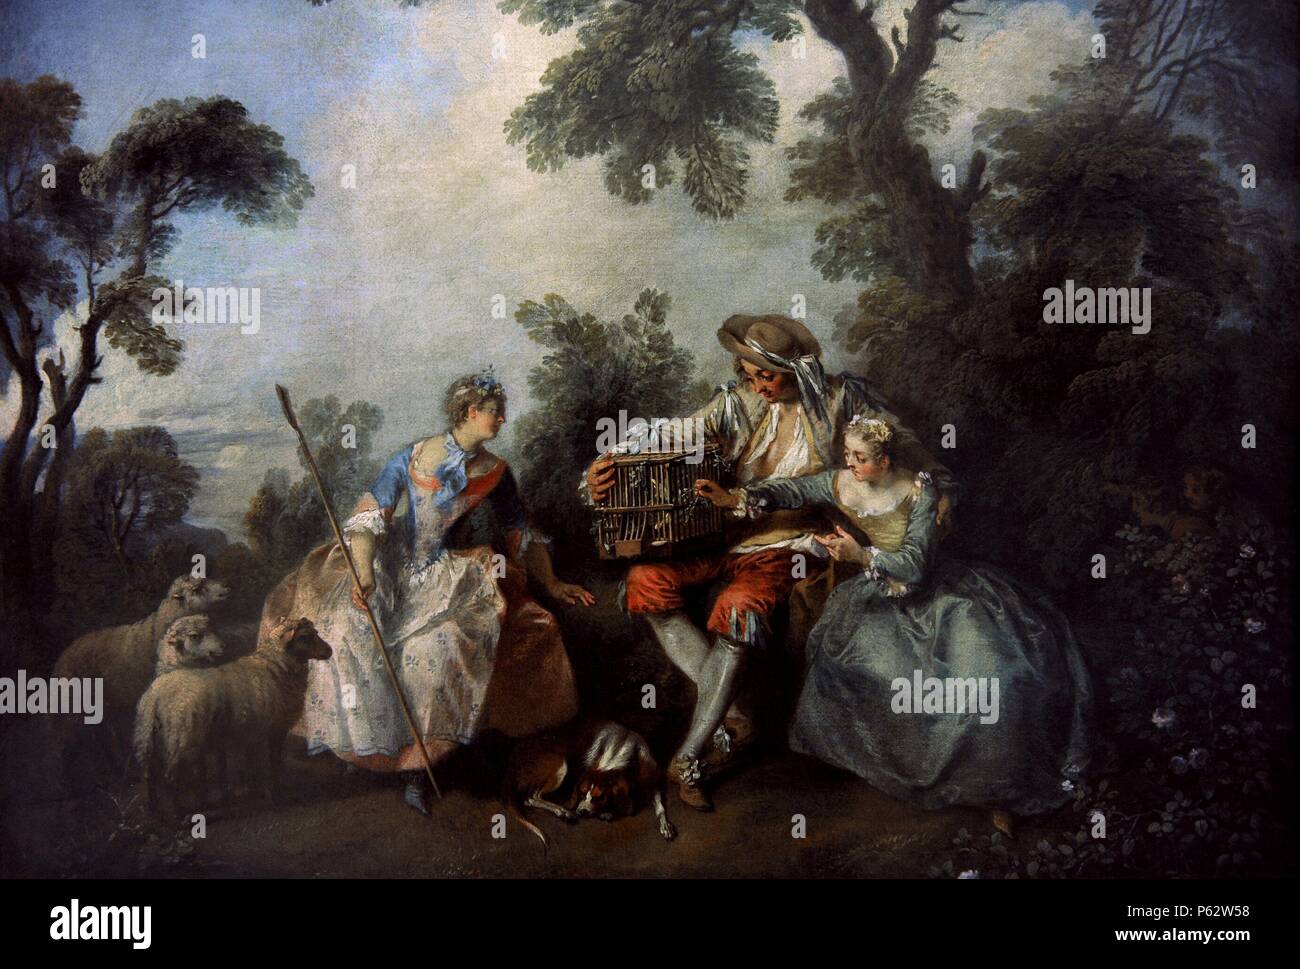 Nicolas Lancret (1690-1743). Le peintre français. La cage à oiseaux. Ca. 1735. L'Alte Pinakothek. Munich. L'Allemagne. Banque D'Images